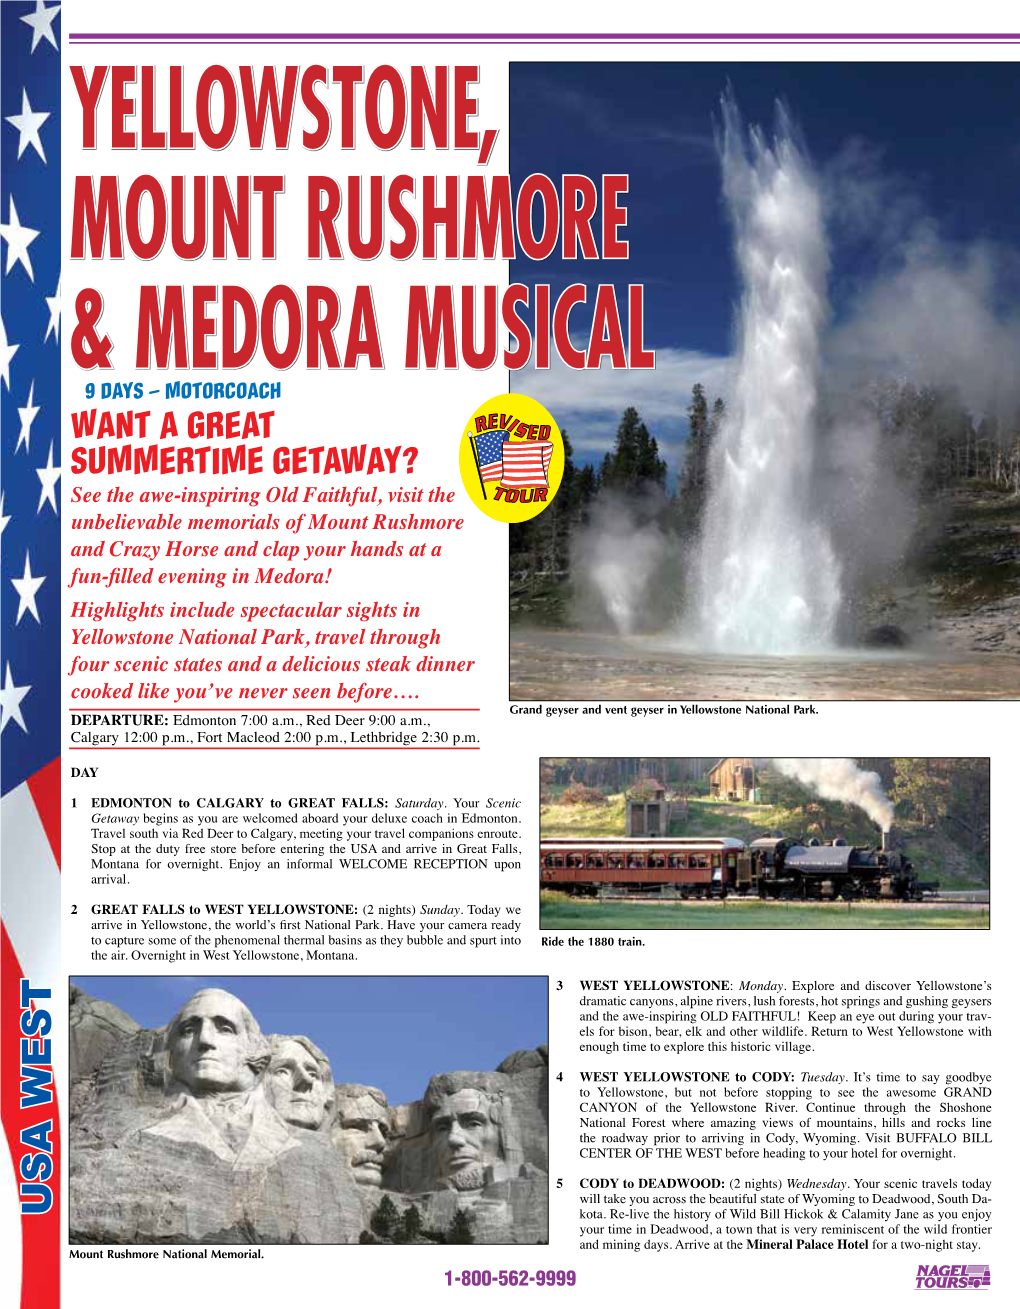 Yellowstone, Mount Rushmore & Medora Musical